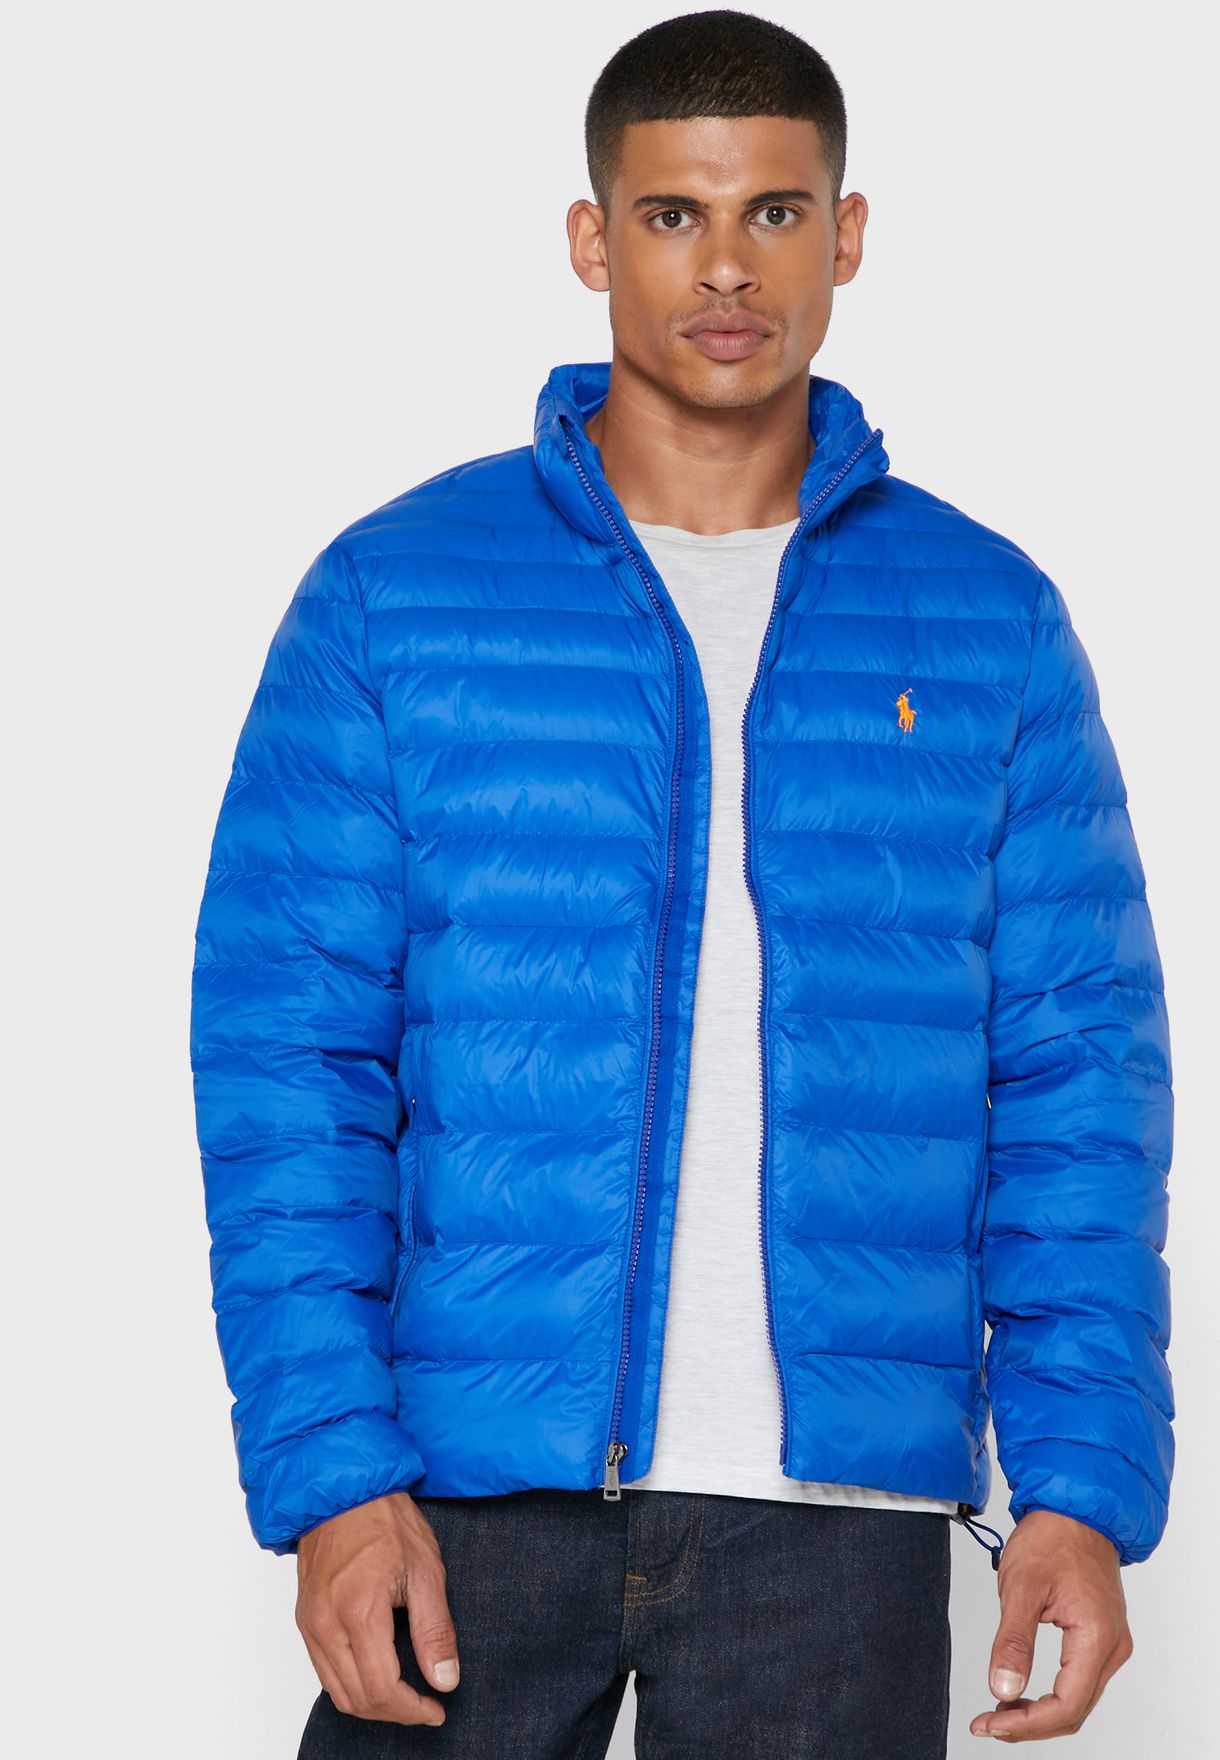 Total 50+ imagen blue ralph lauren jacket